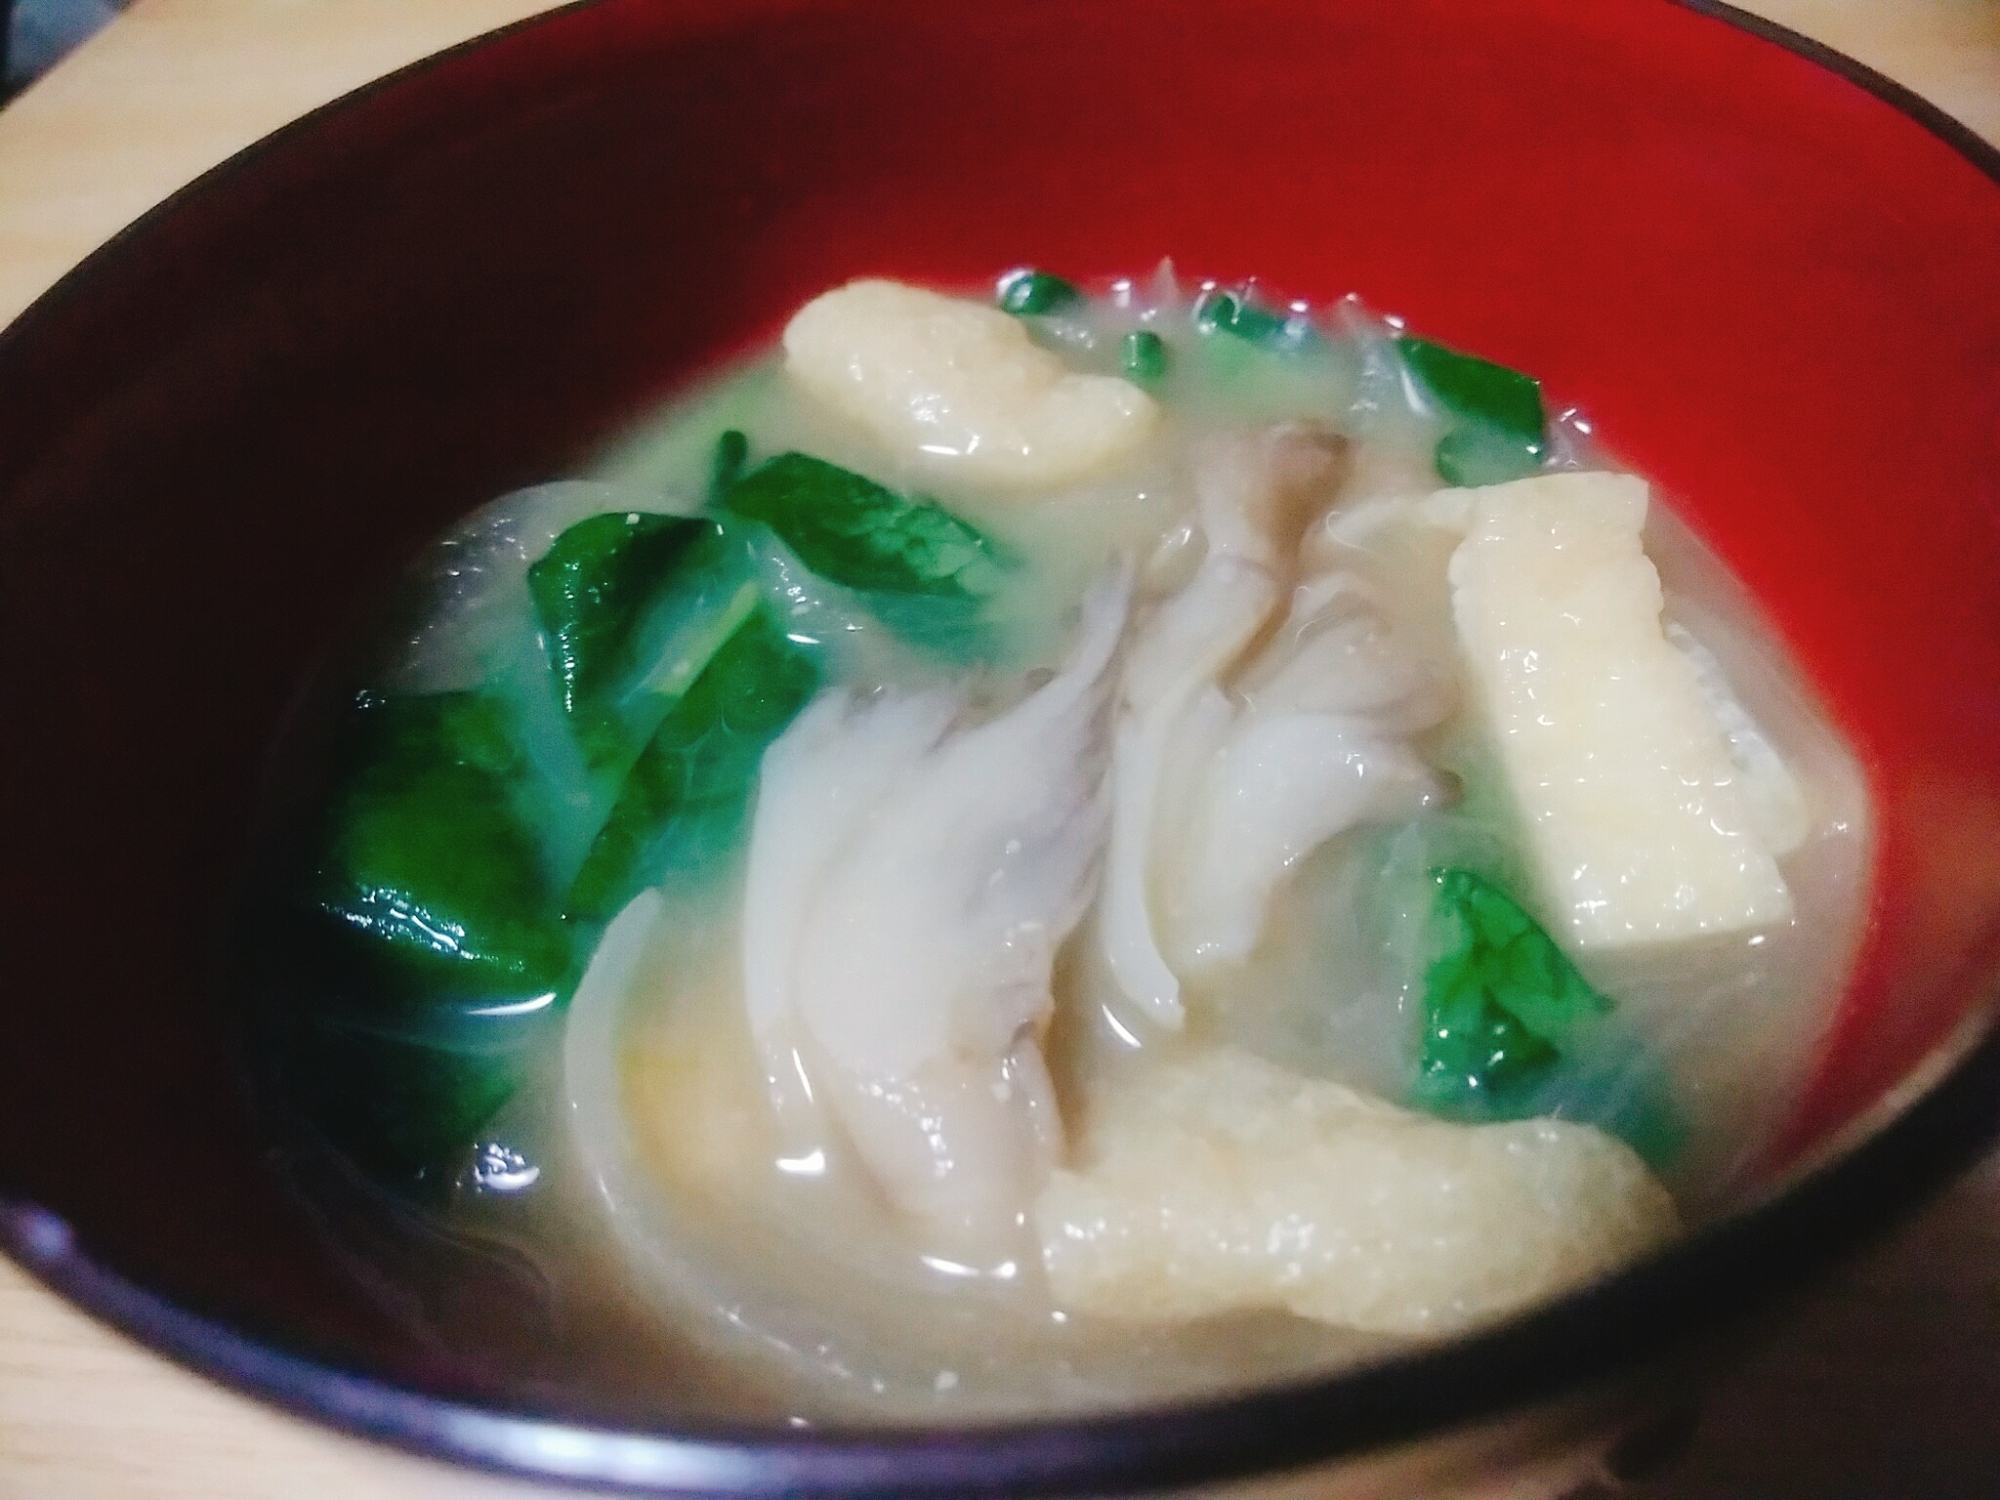 ちぢみ菜と舞茸の味噌汁